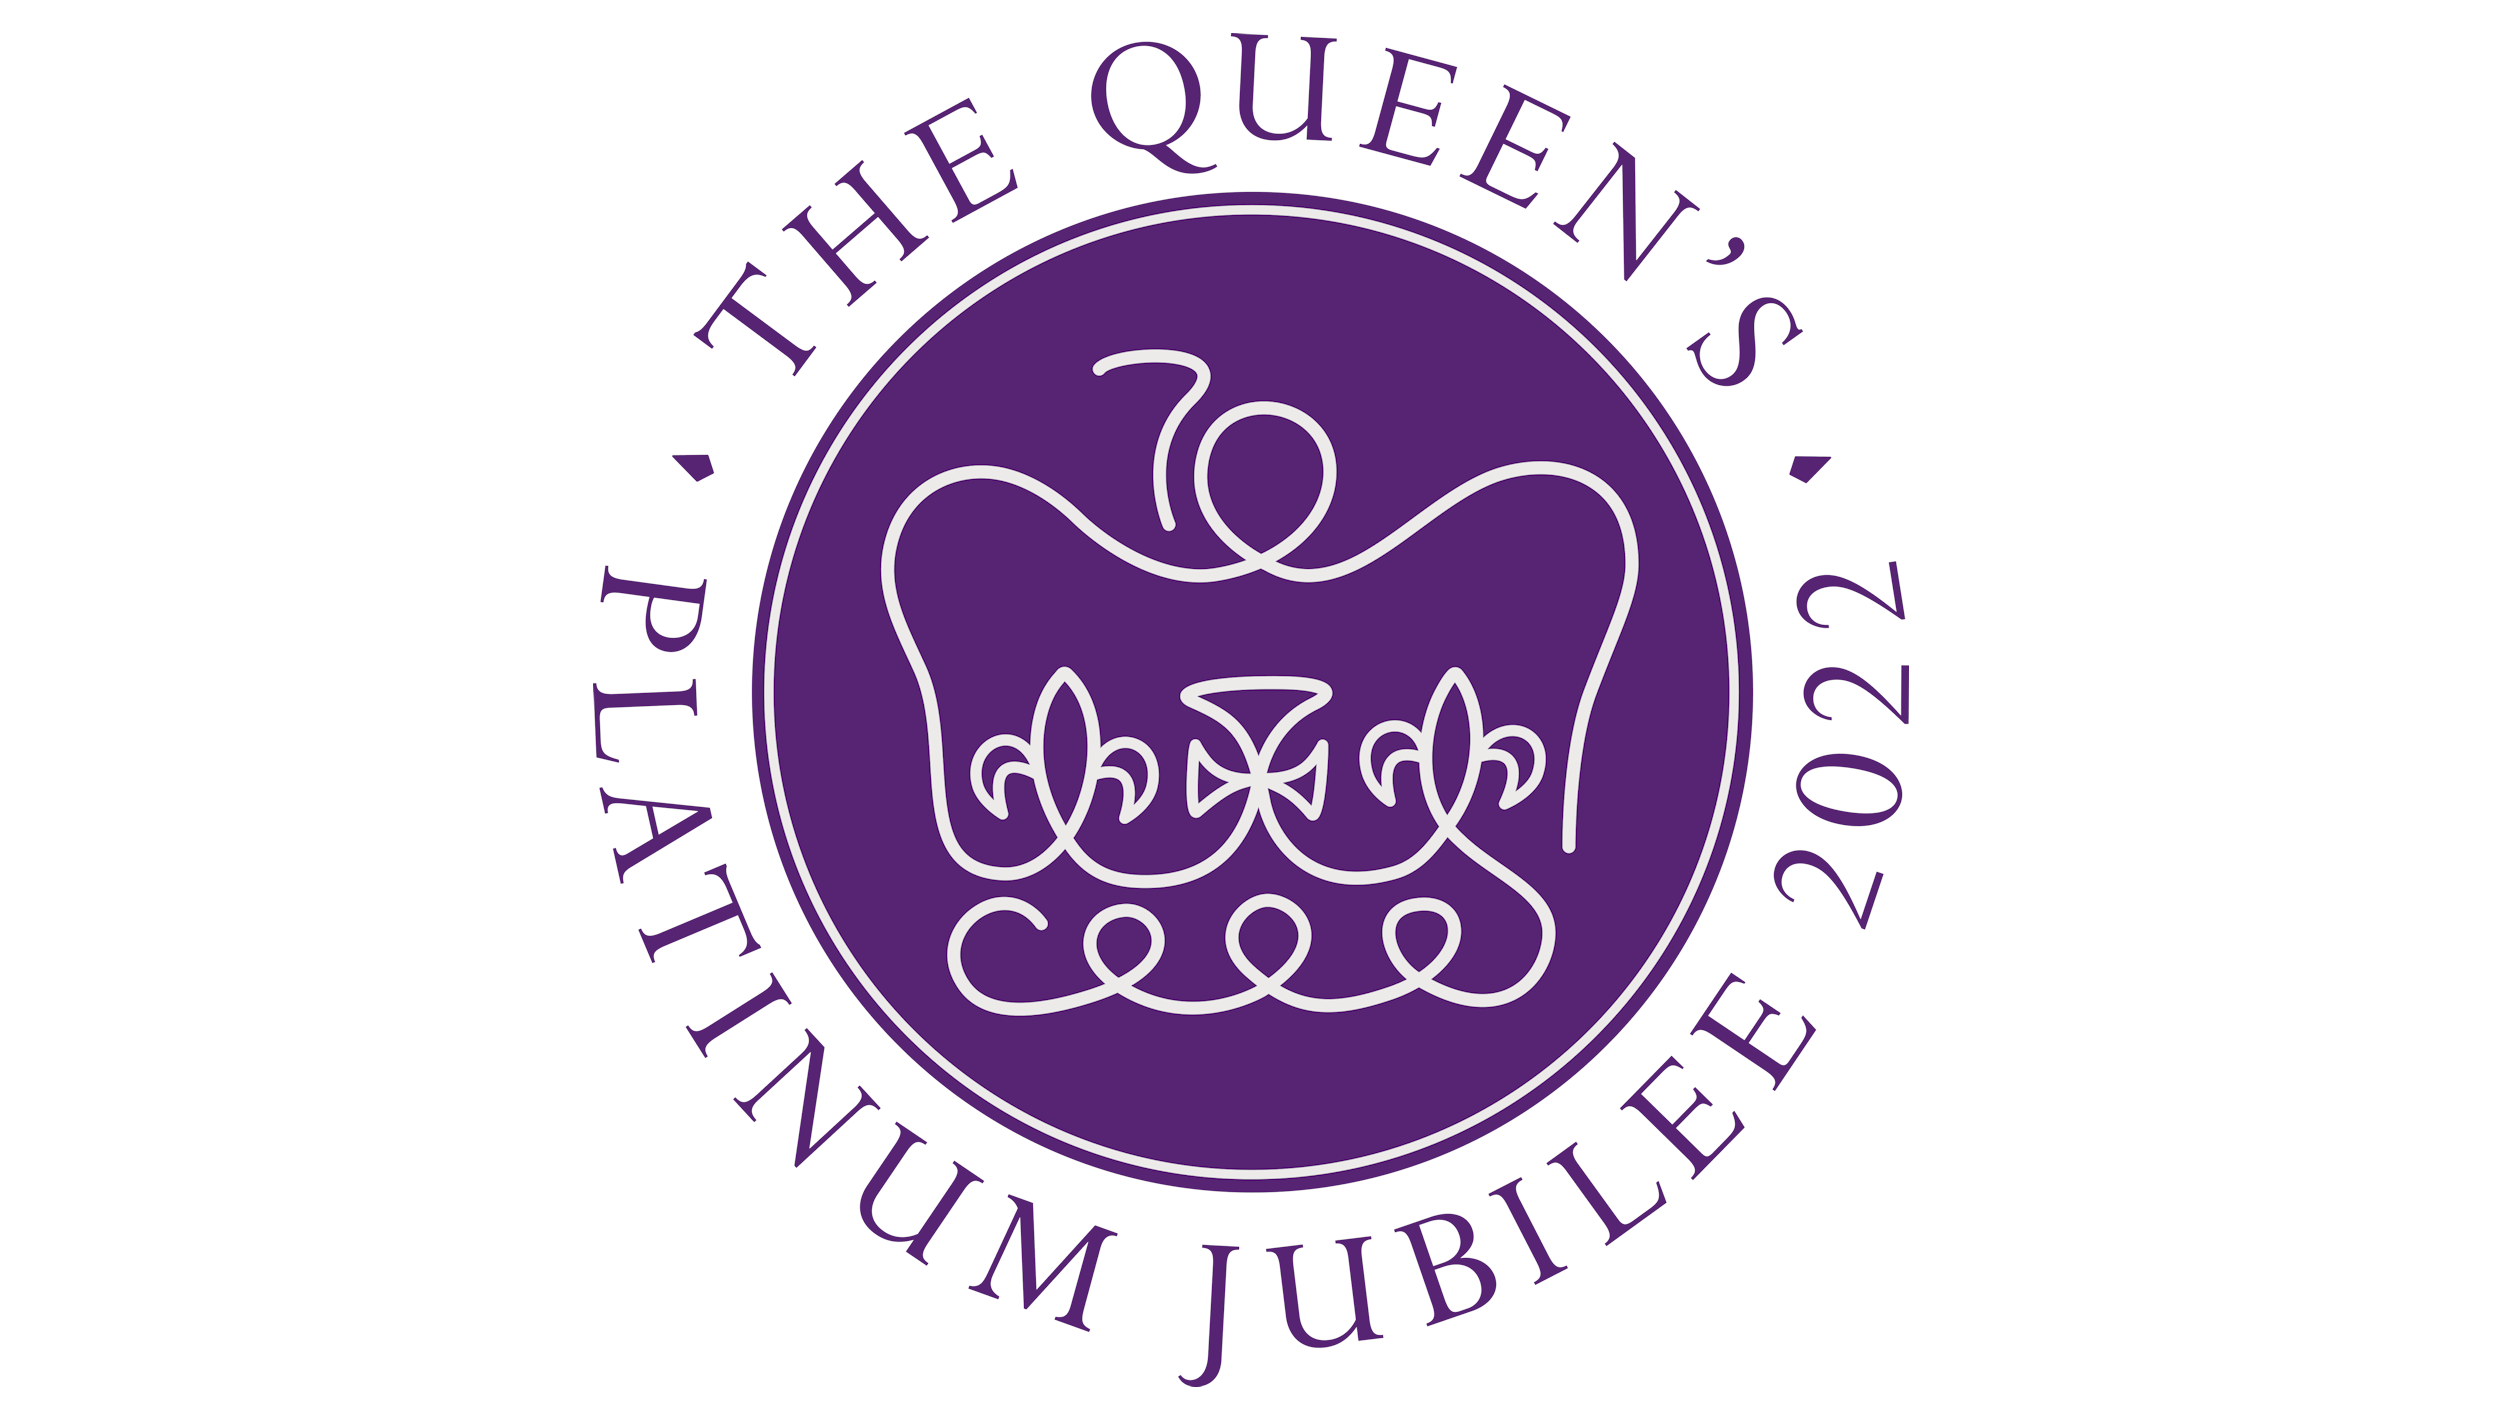 Queens platinum jubilee logo